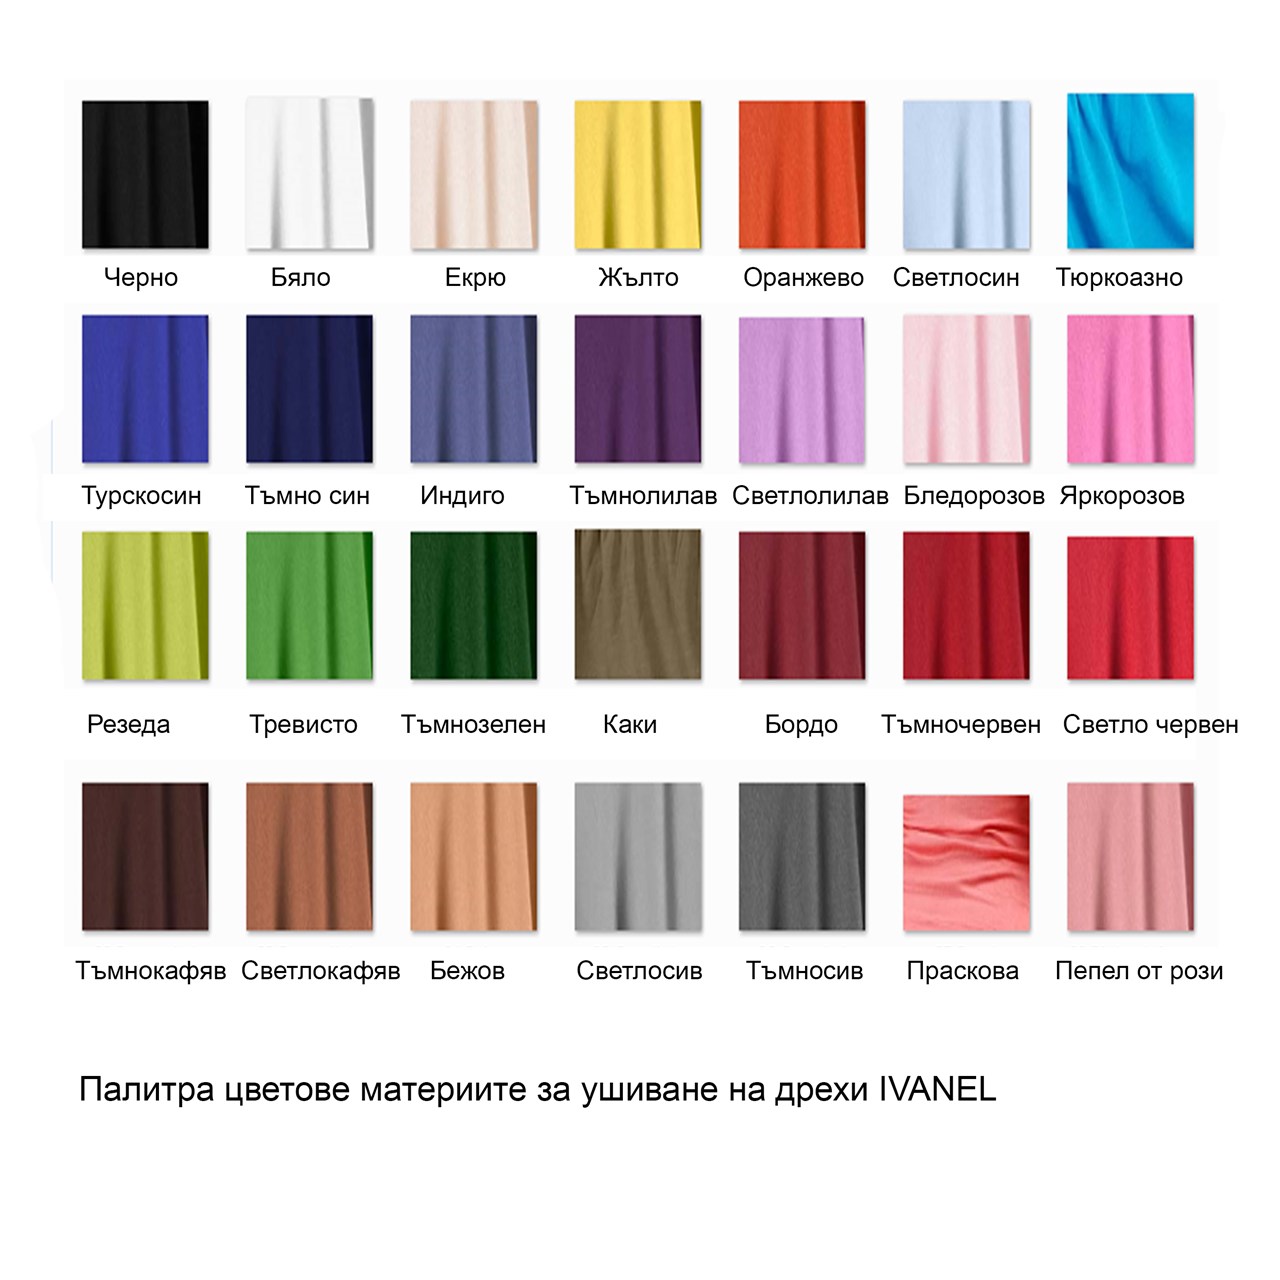 дамски дрехи онлайн в желан цвят и всички размери от ателие Иванел